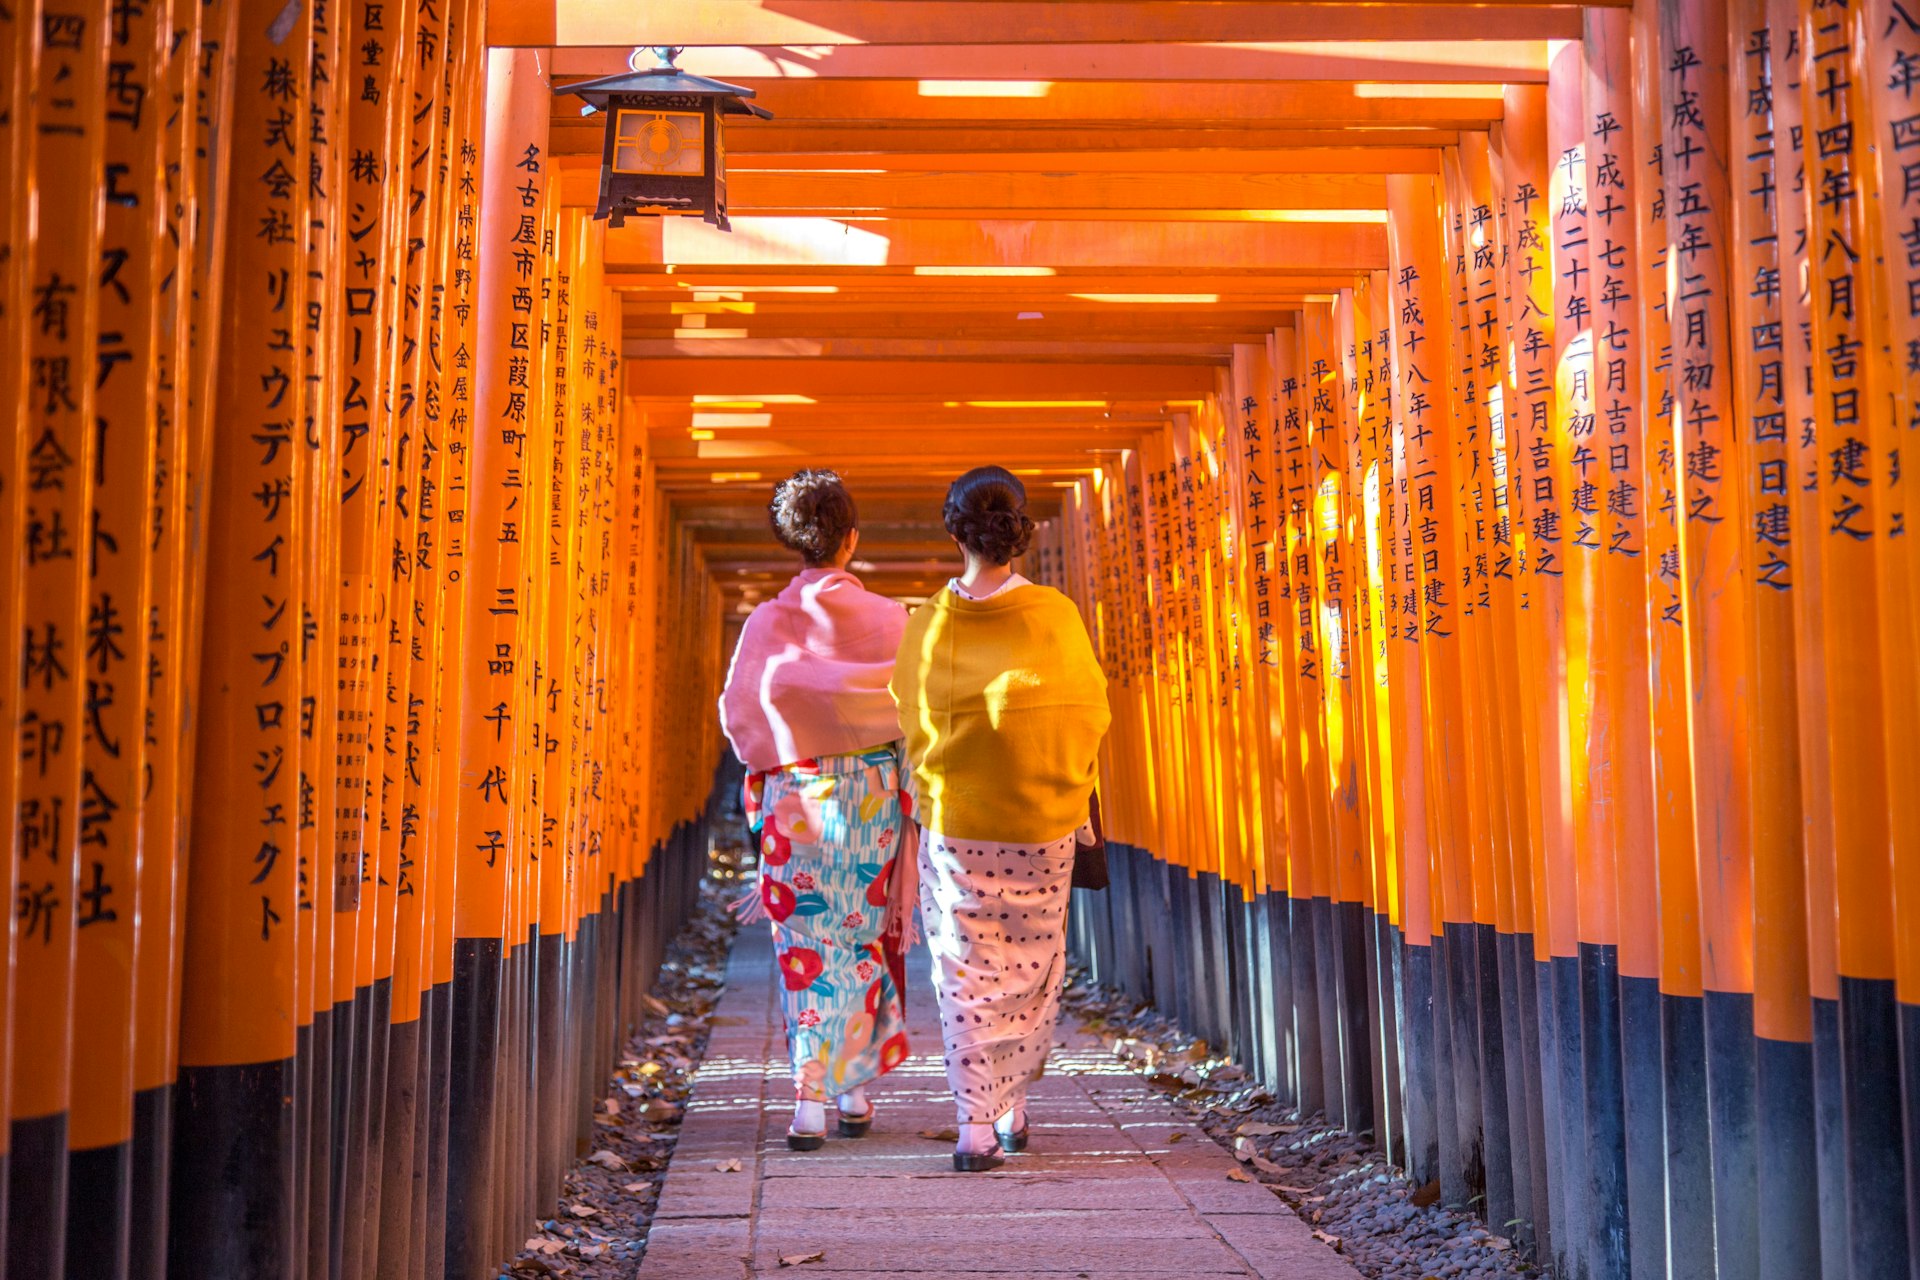 Two geishas walking through the arcade of torii gates at the Fushimi Inari Shrine